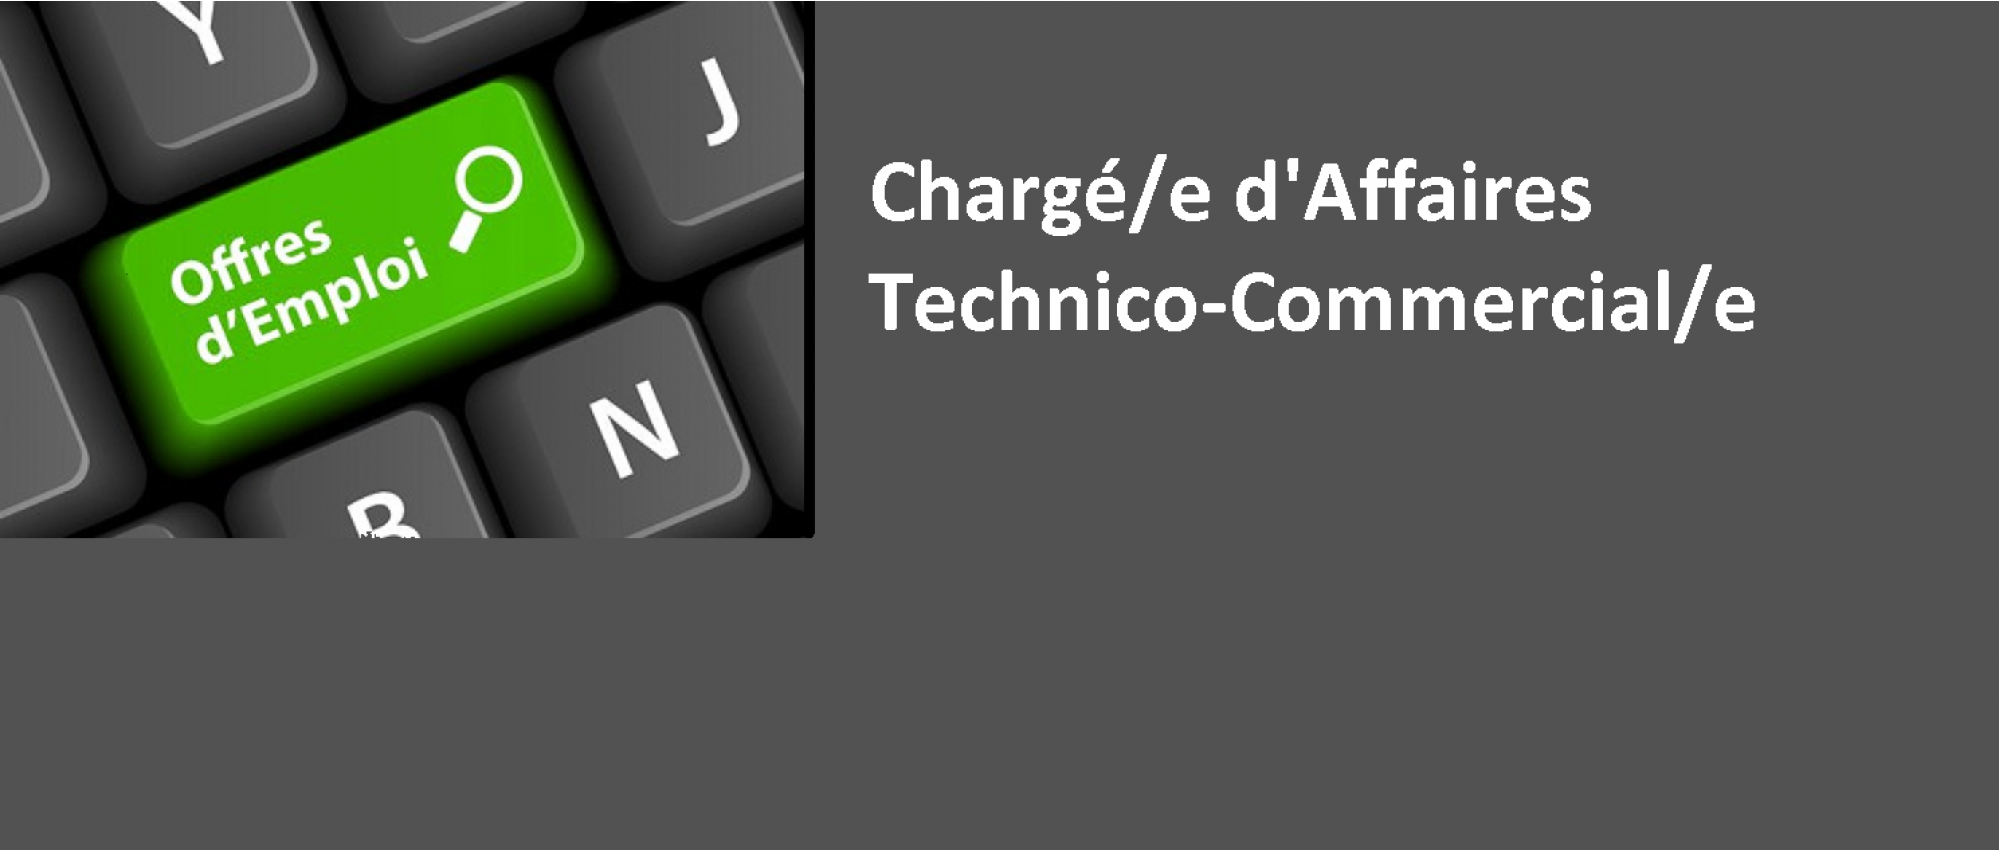 CHARGE/E D’AFFAIRES - TECHNICO COMMERCIAL/E